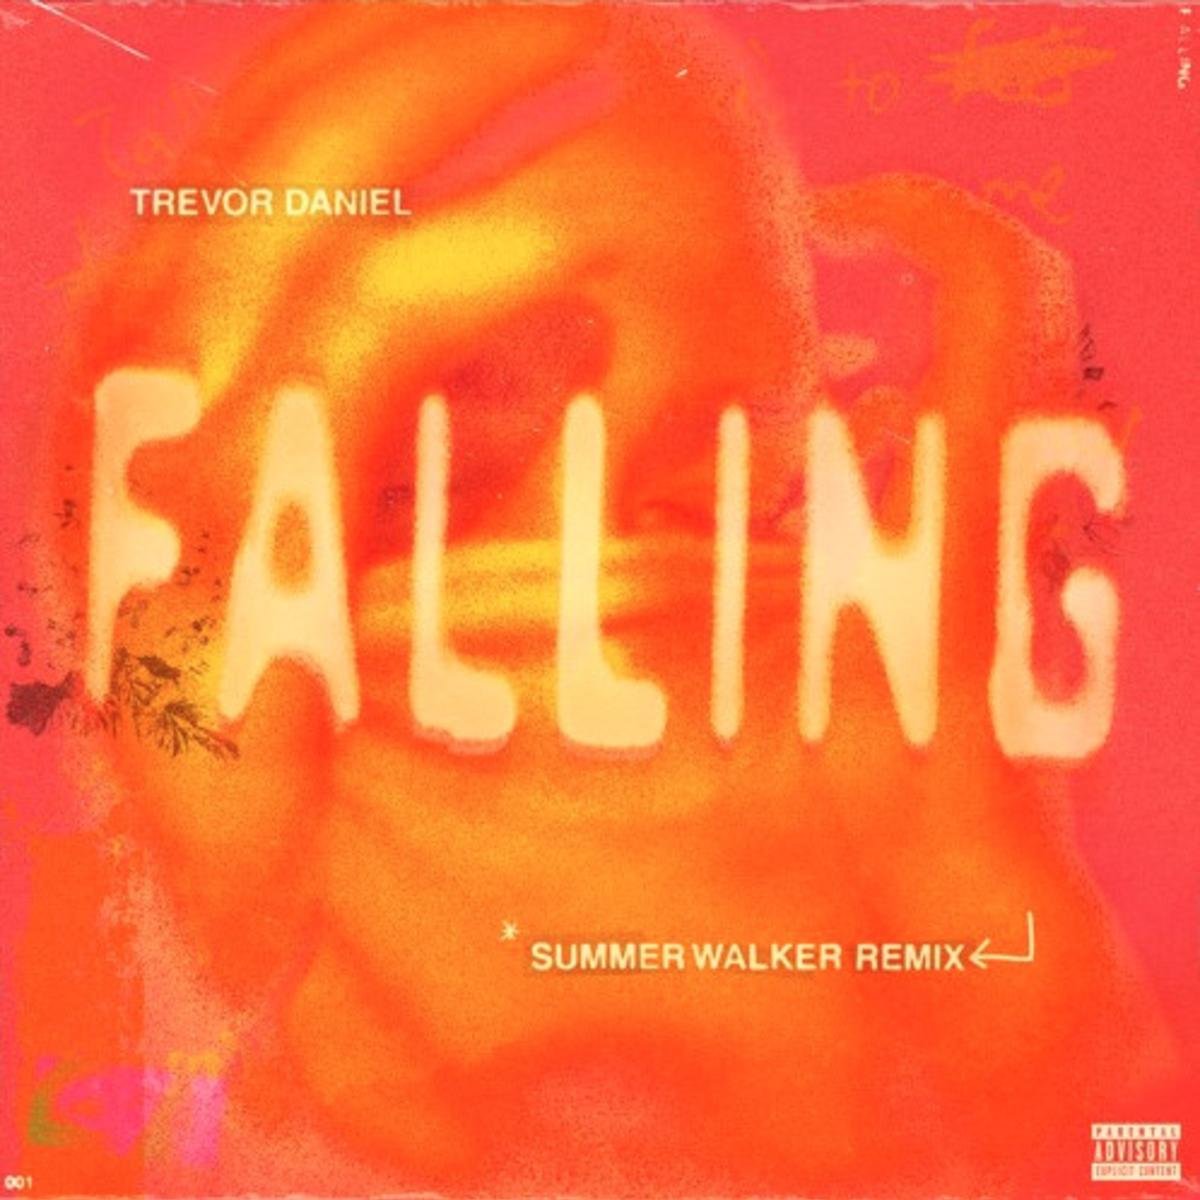 Falling (Summer Walker Remix)